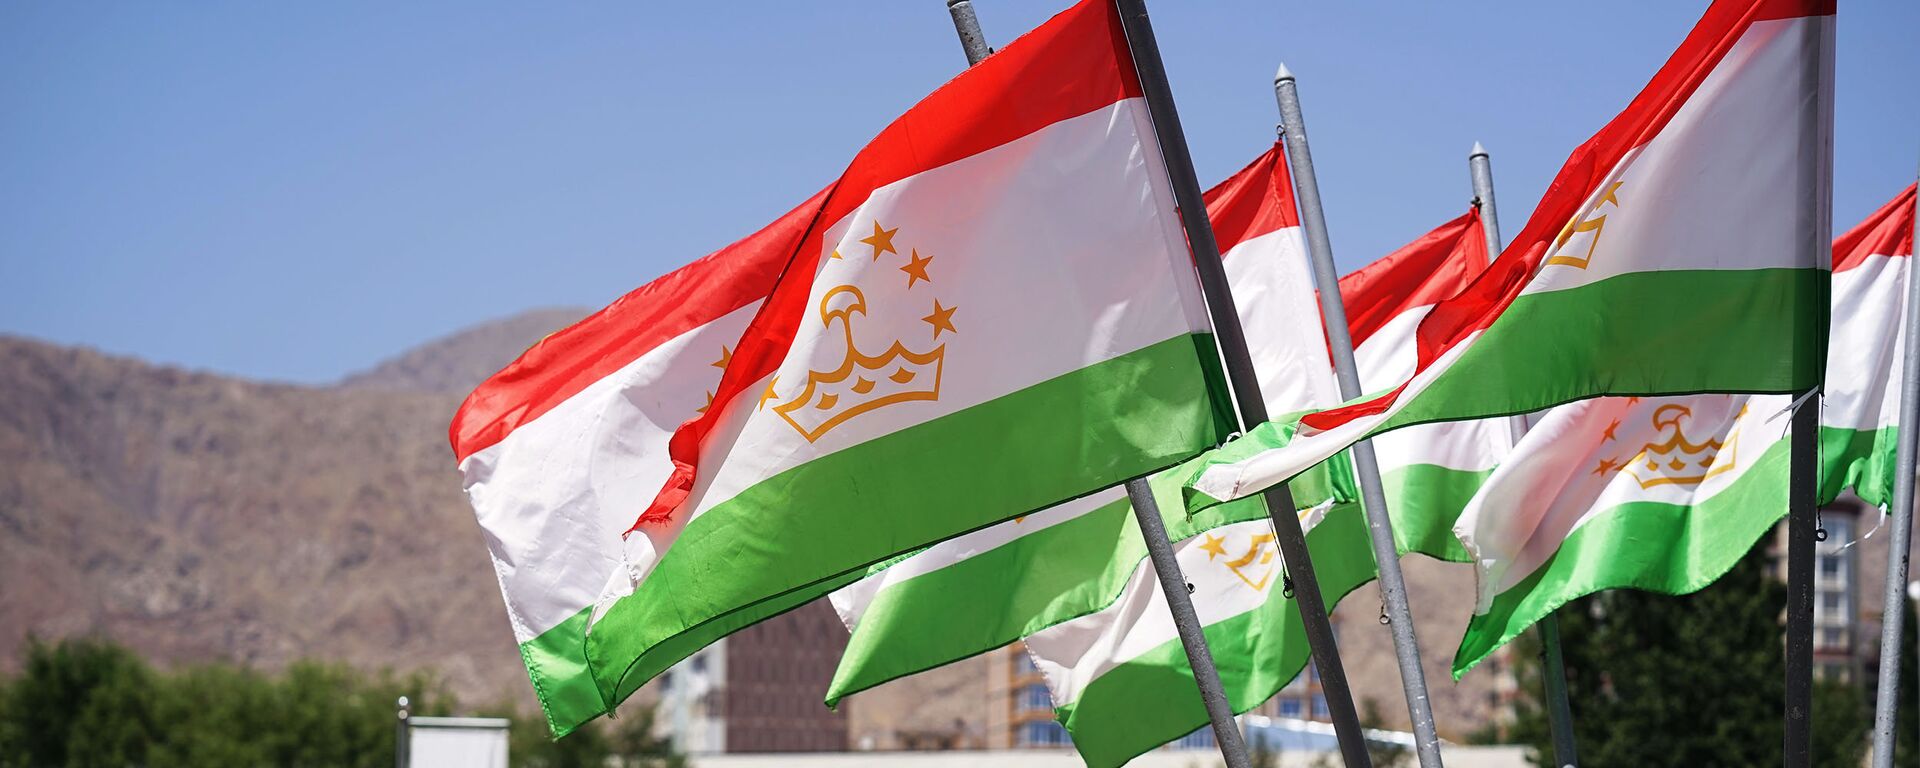 Флаги Таджикистана, архивное фото - Sputnik Таджикистан, 1920, 25.07.2021